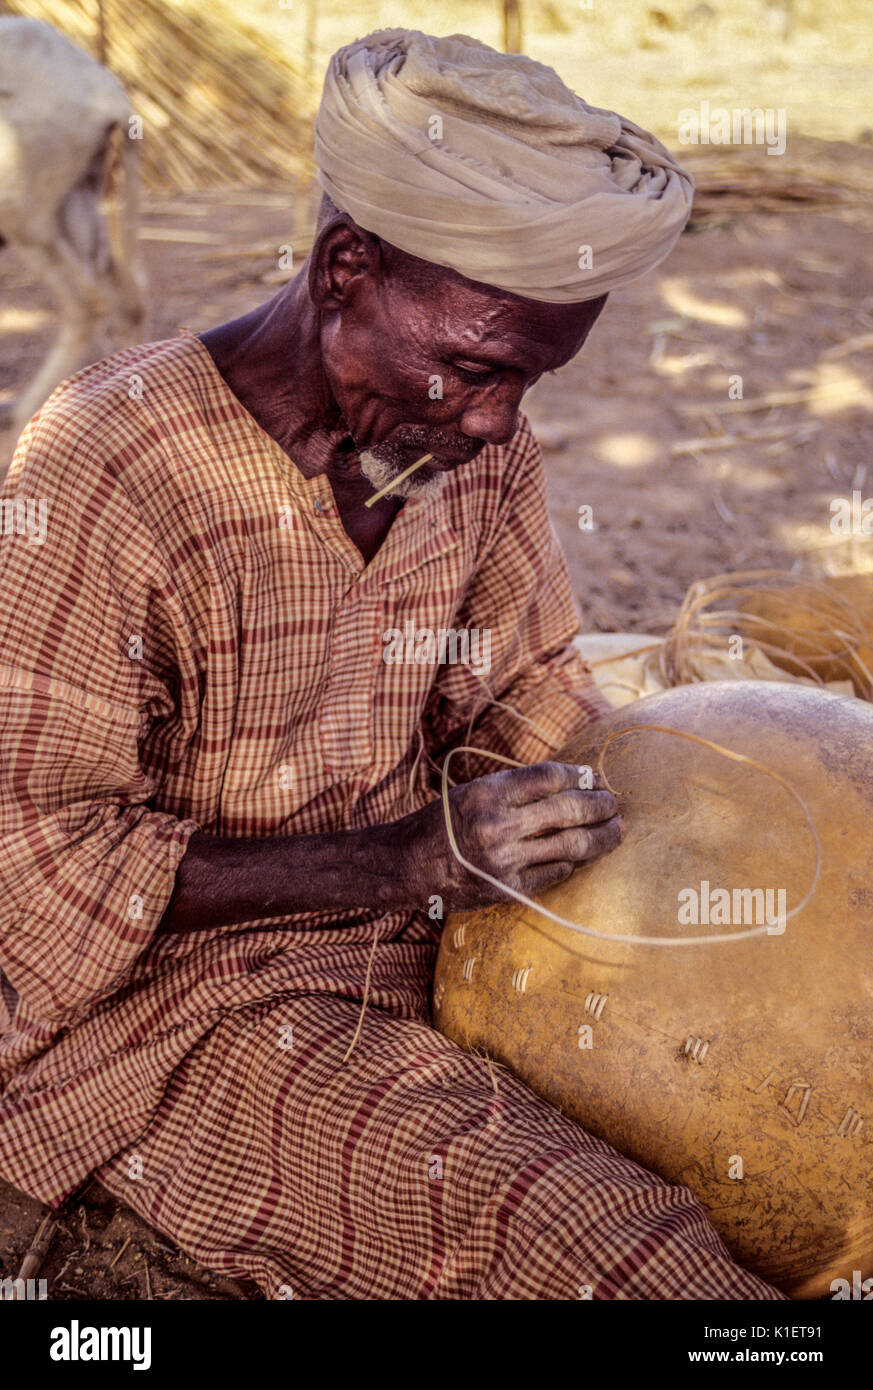 Níger, Delaquara, África occidental. Hombre Sordo estaba arreglando una calabaza. Foto de stock